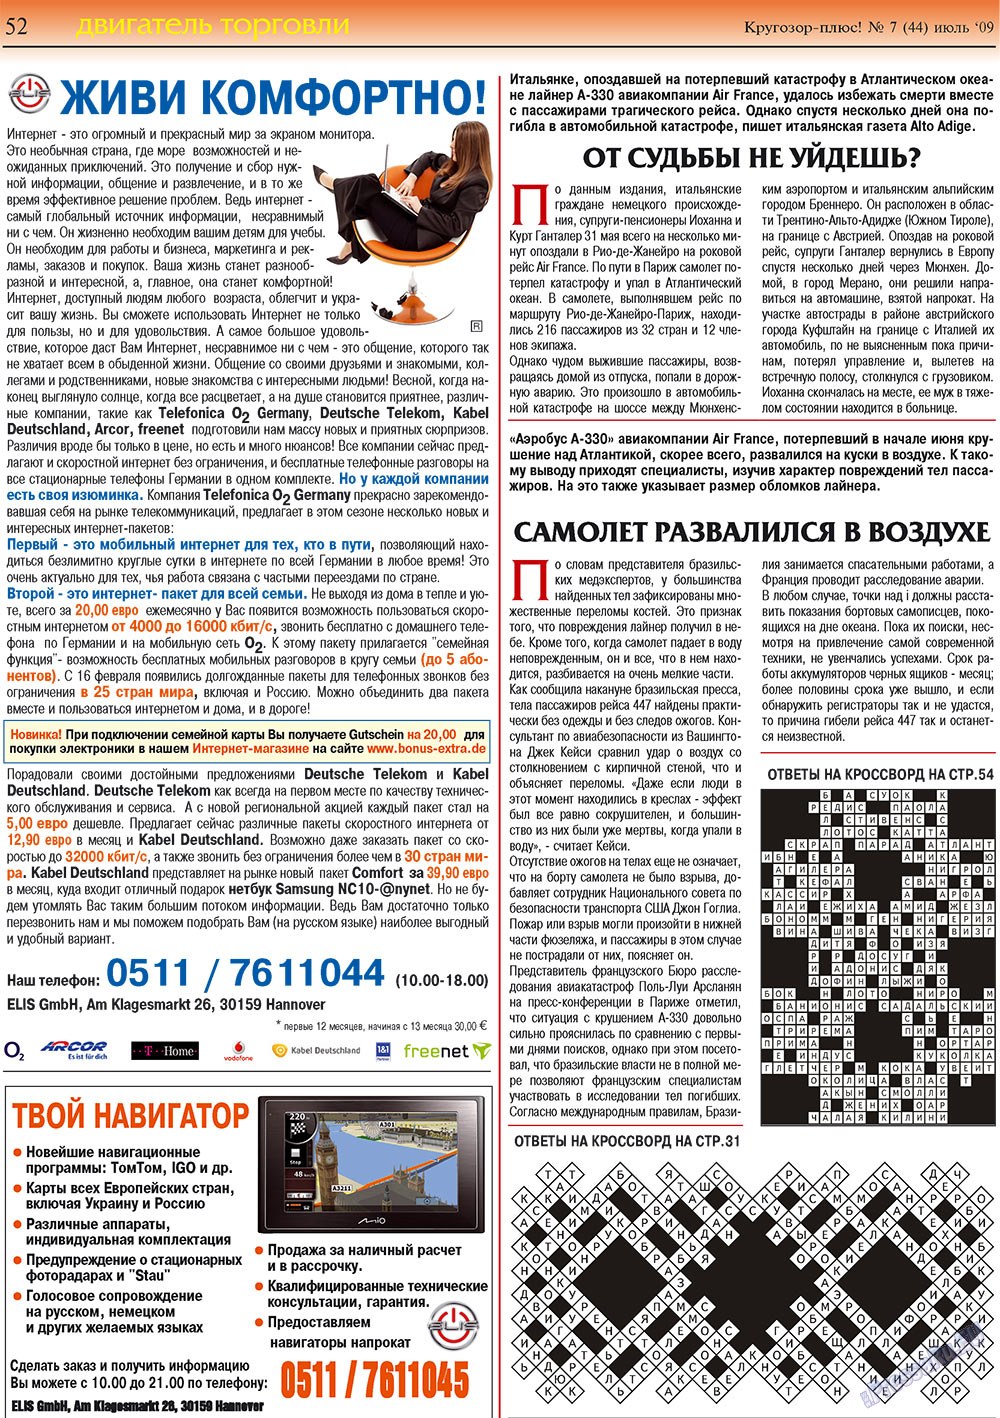 Кругозор плюс!, газета. 2009 №7 стр.52